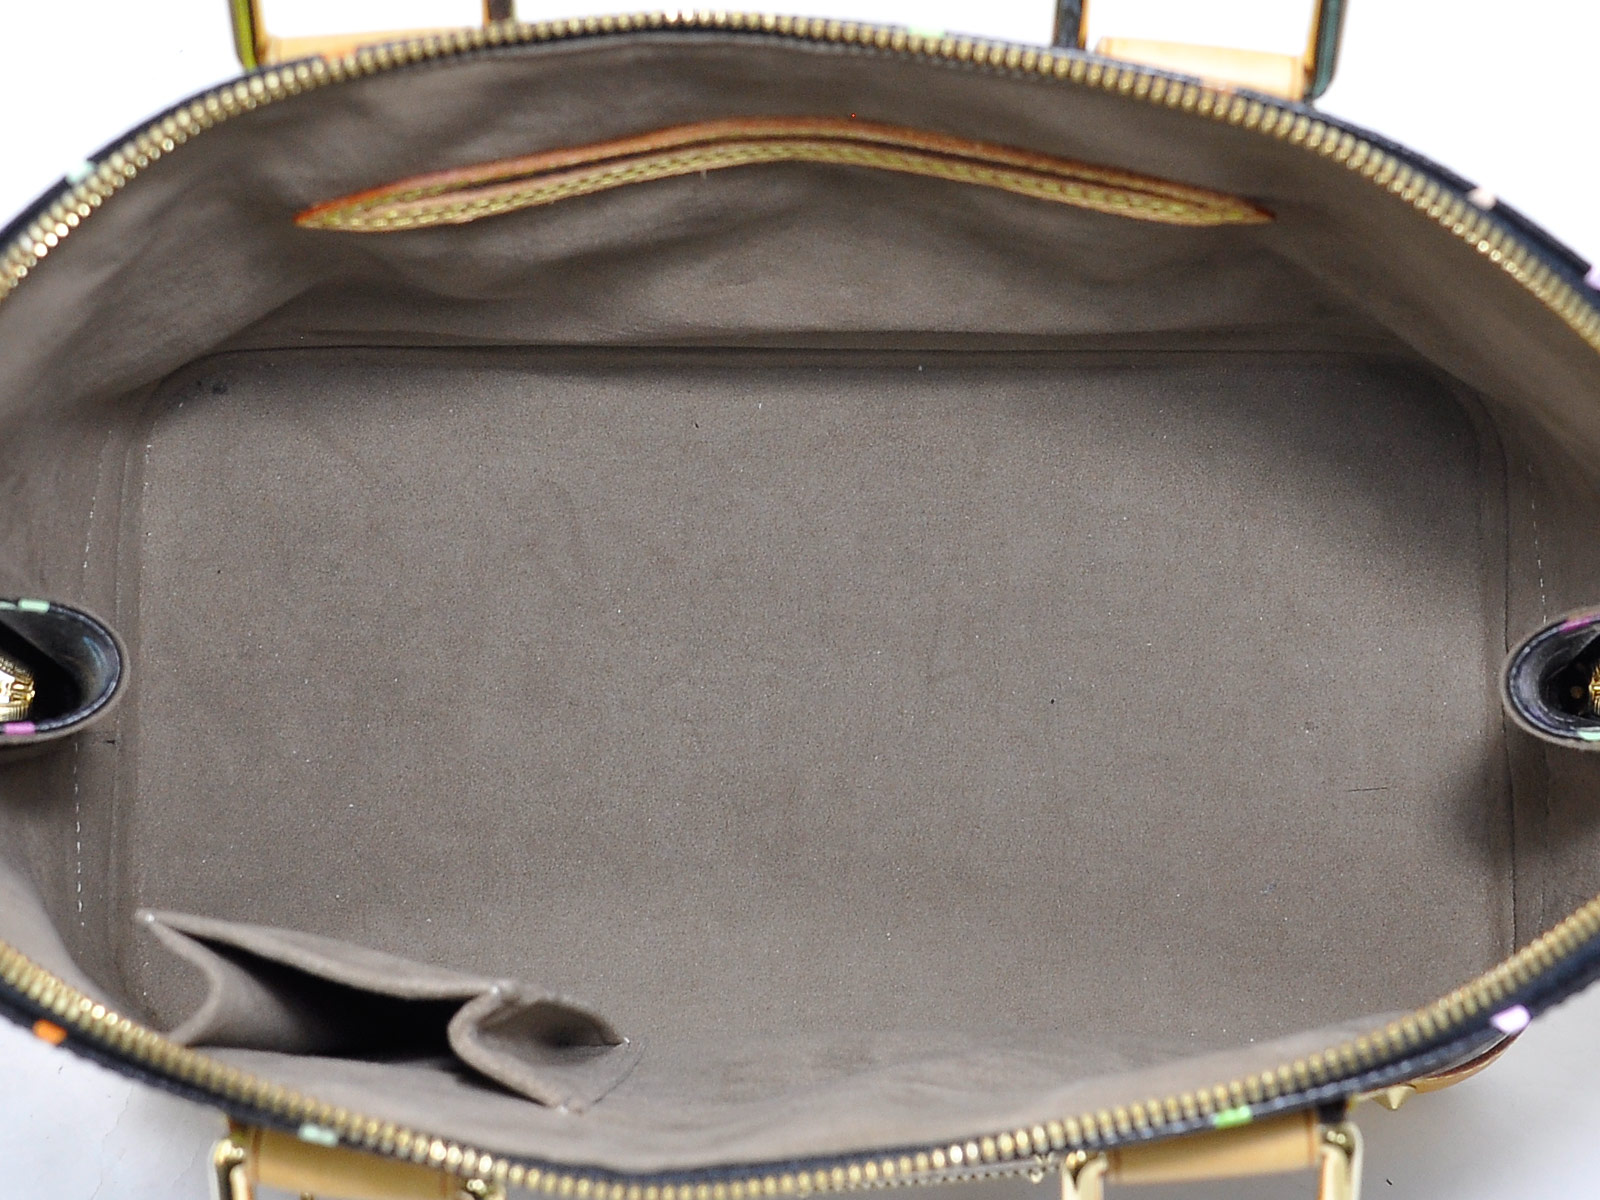 Auth Louis Vuitton Multicolor Monogram Alma PM Handbag Black/Multicolor - 98142c | eBay